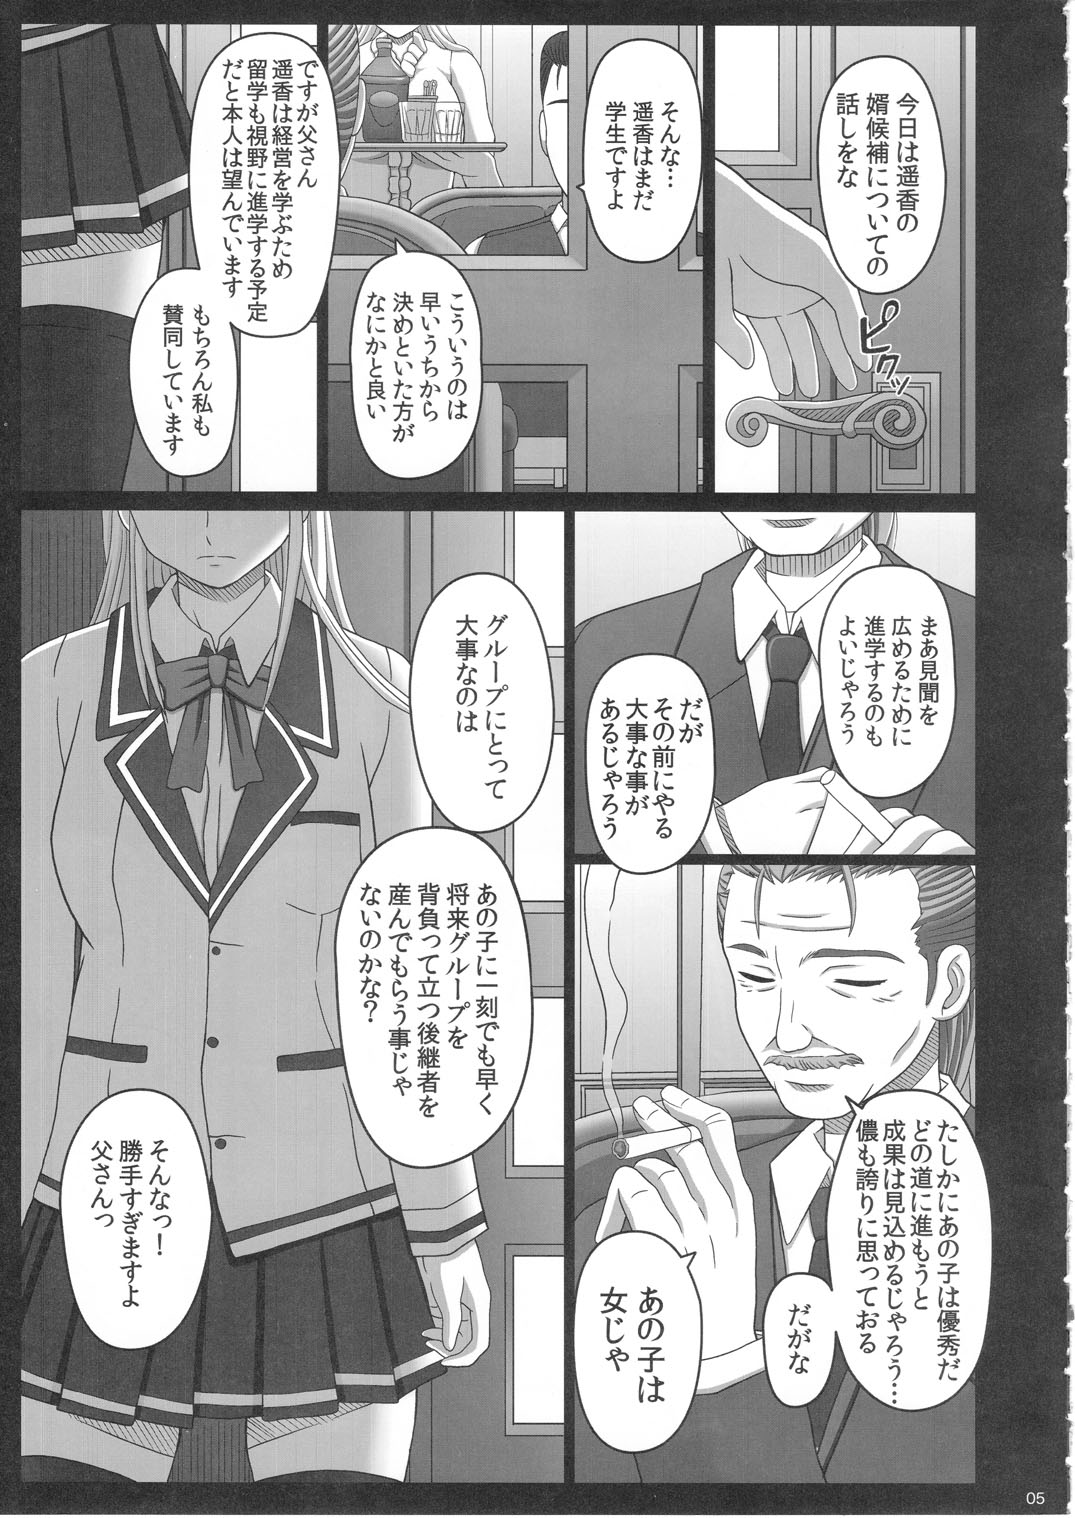 [Shiawase Kyouwakoku (Shiawase no Katachi)] Katashibu 25-shuu page 5 full